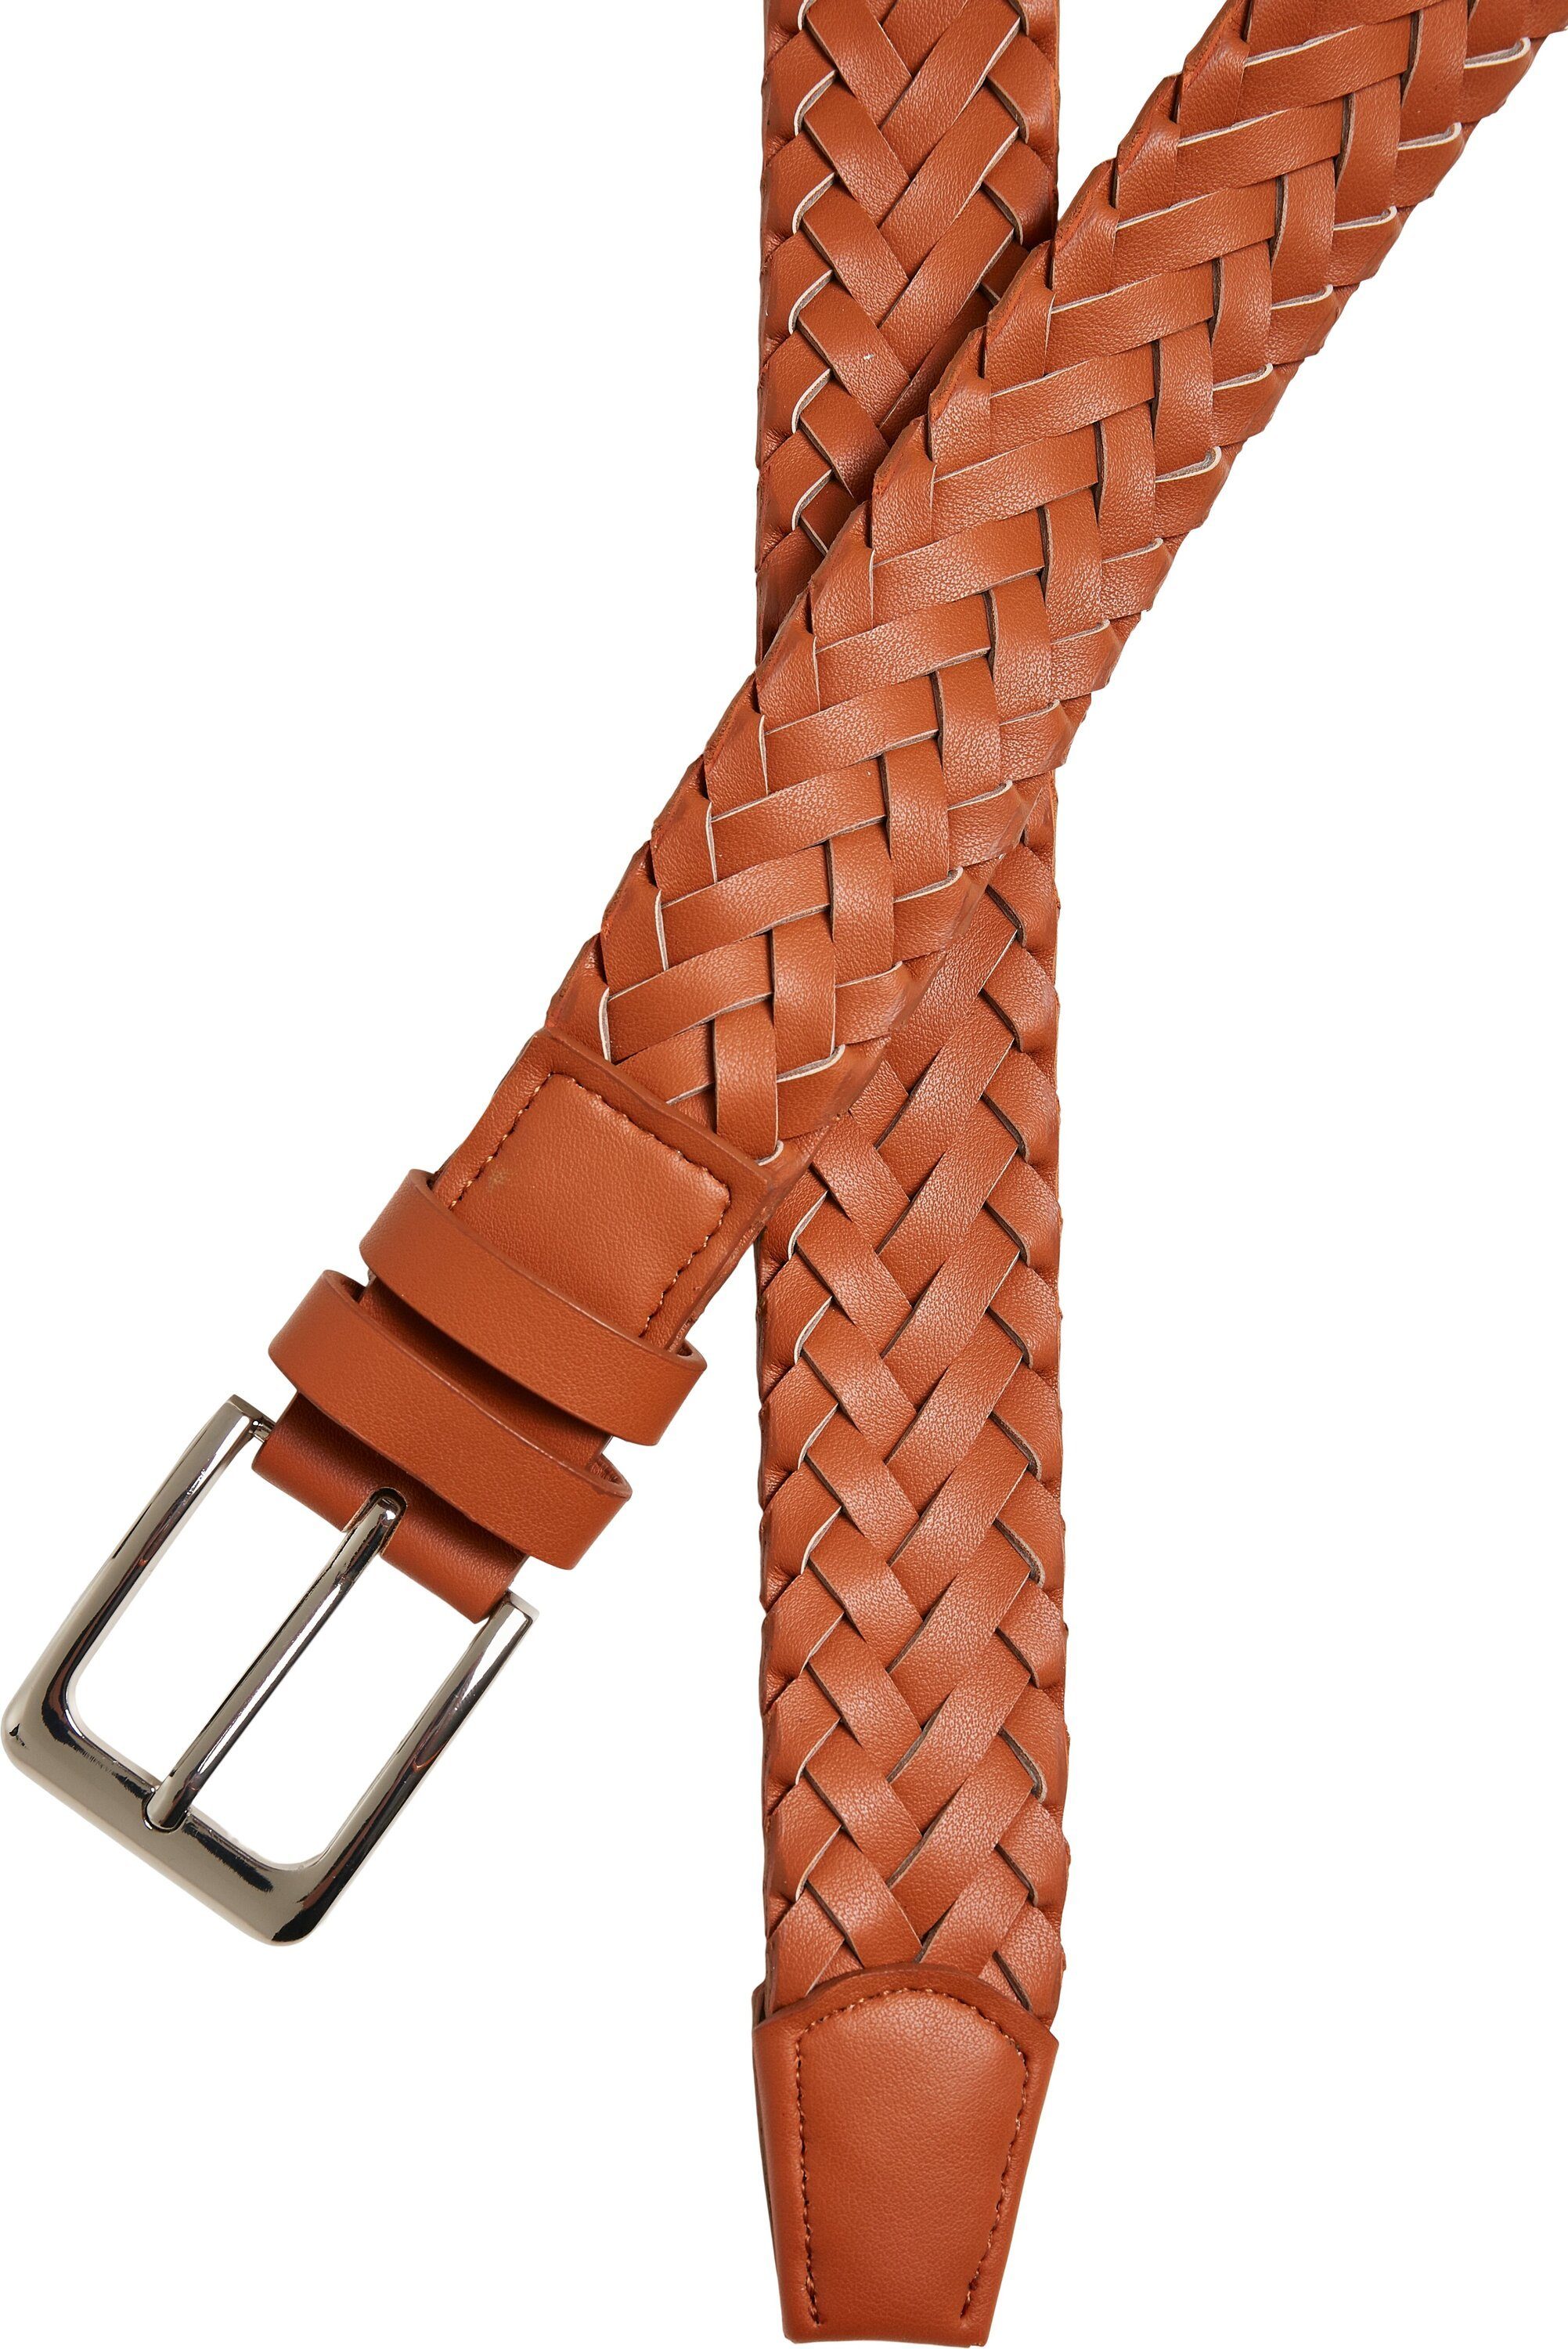 URBAN befestigen Accessoire, CLASSICS um Leather Hüftgürtel Accessoires Synthetic Praktisches zu Belt, Gegenstände Braided